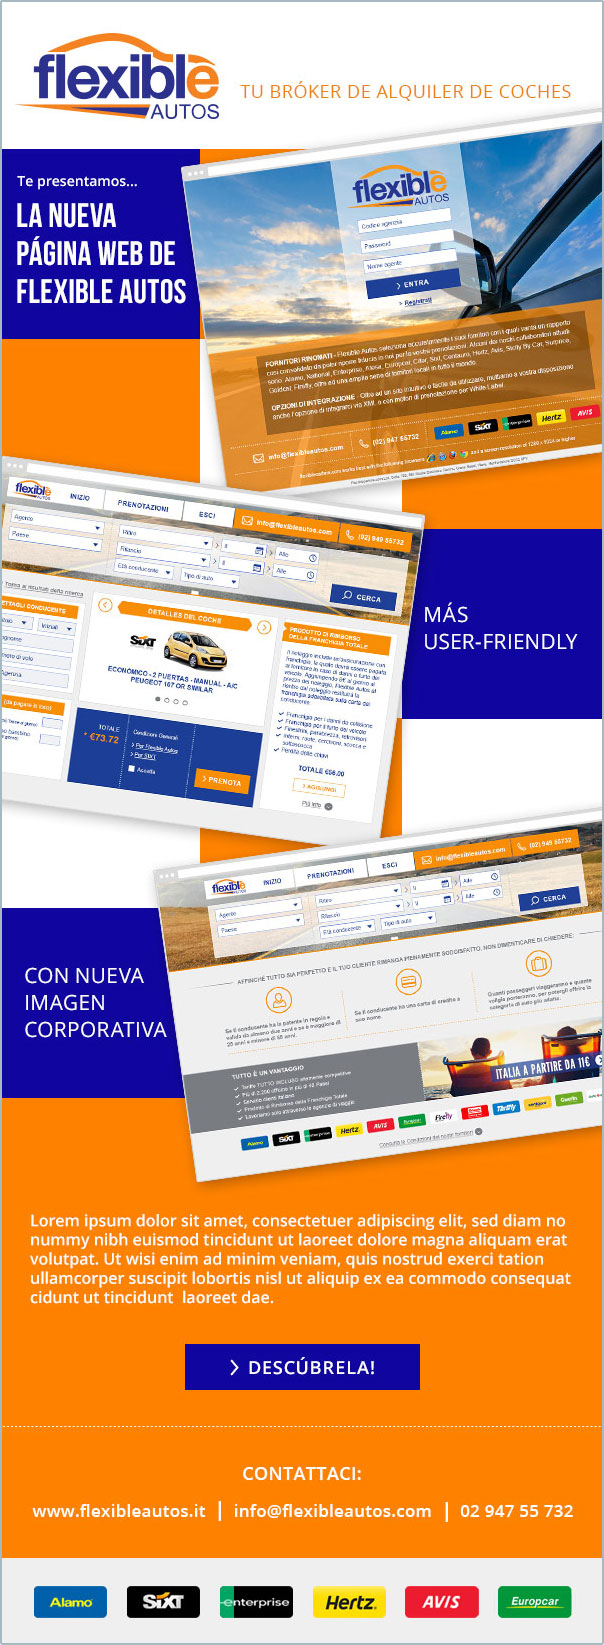 Asier Reguera web design - Flexible Autos Newsletter